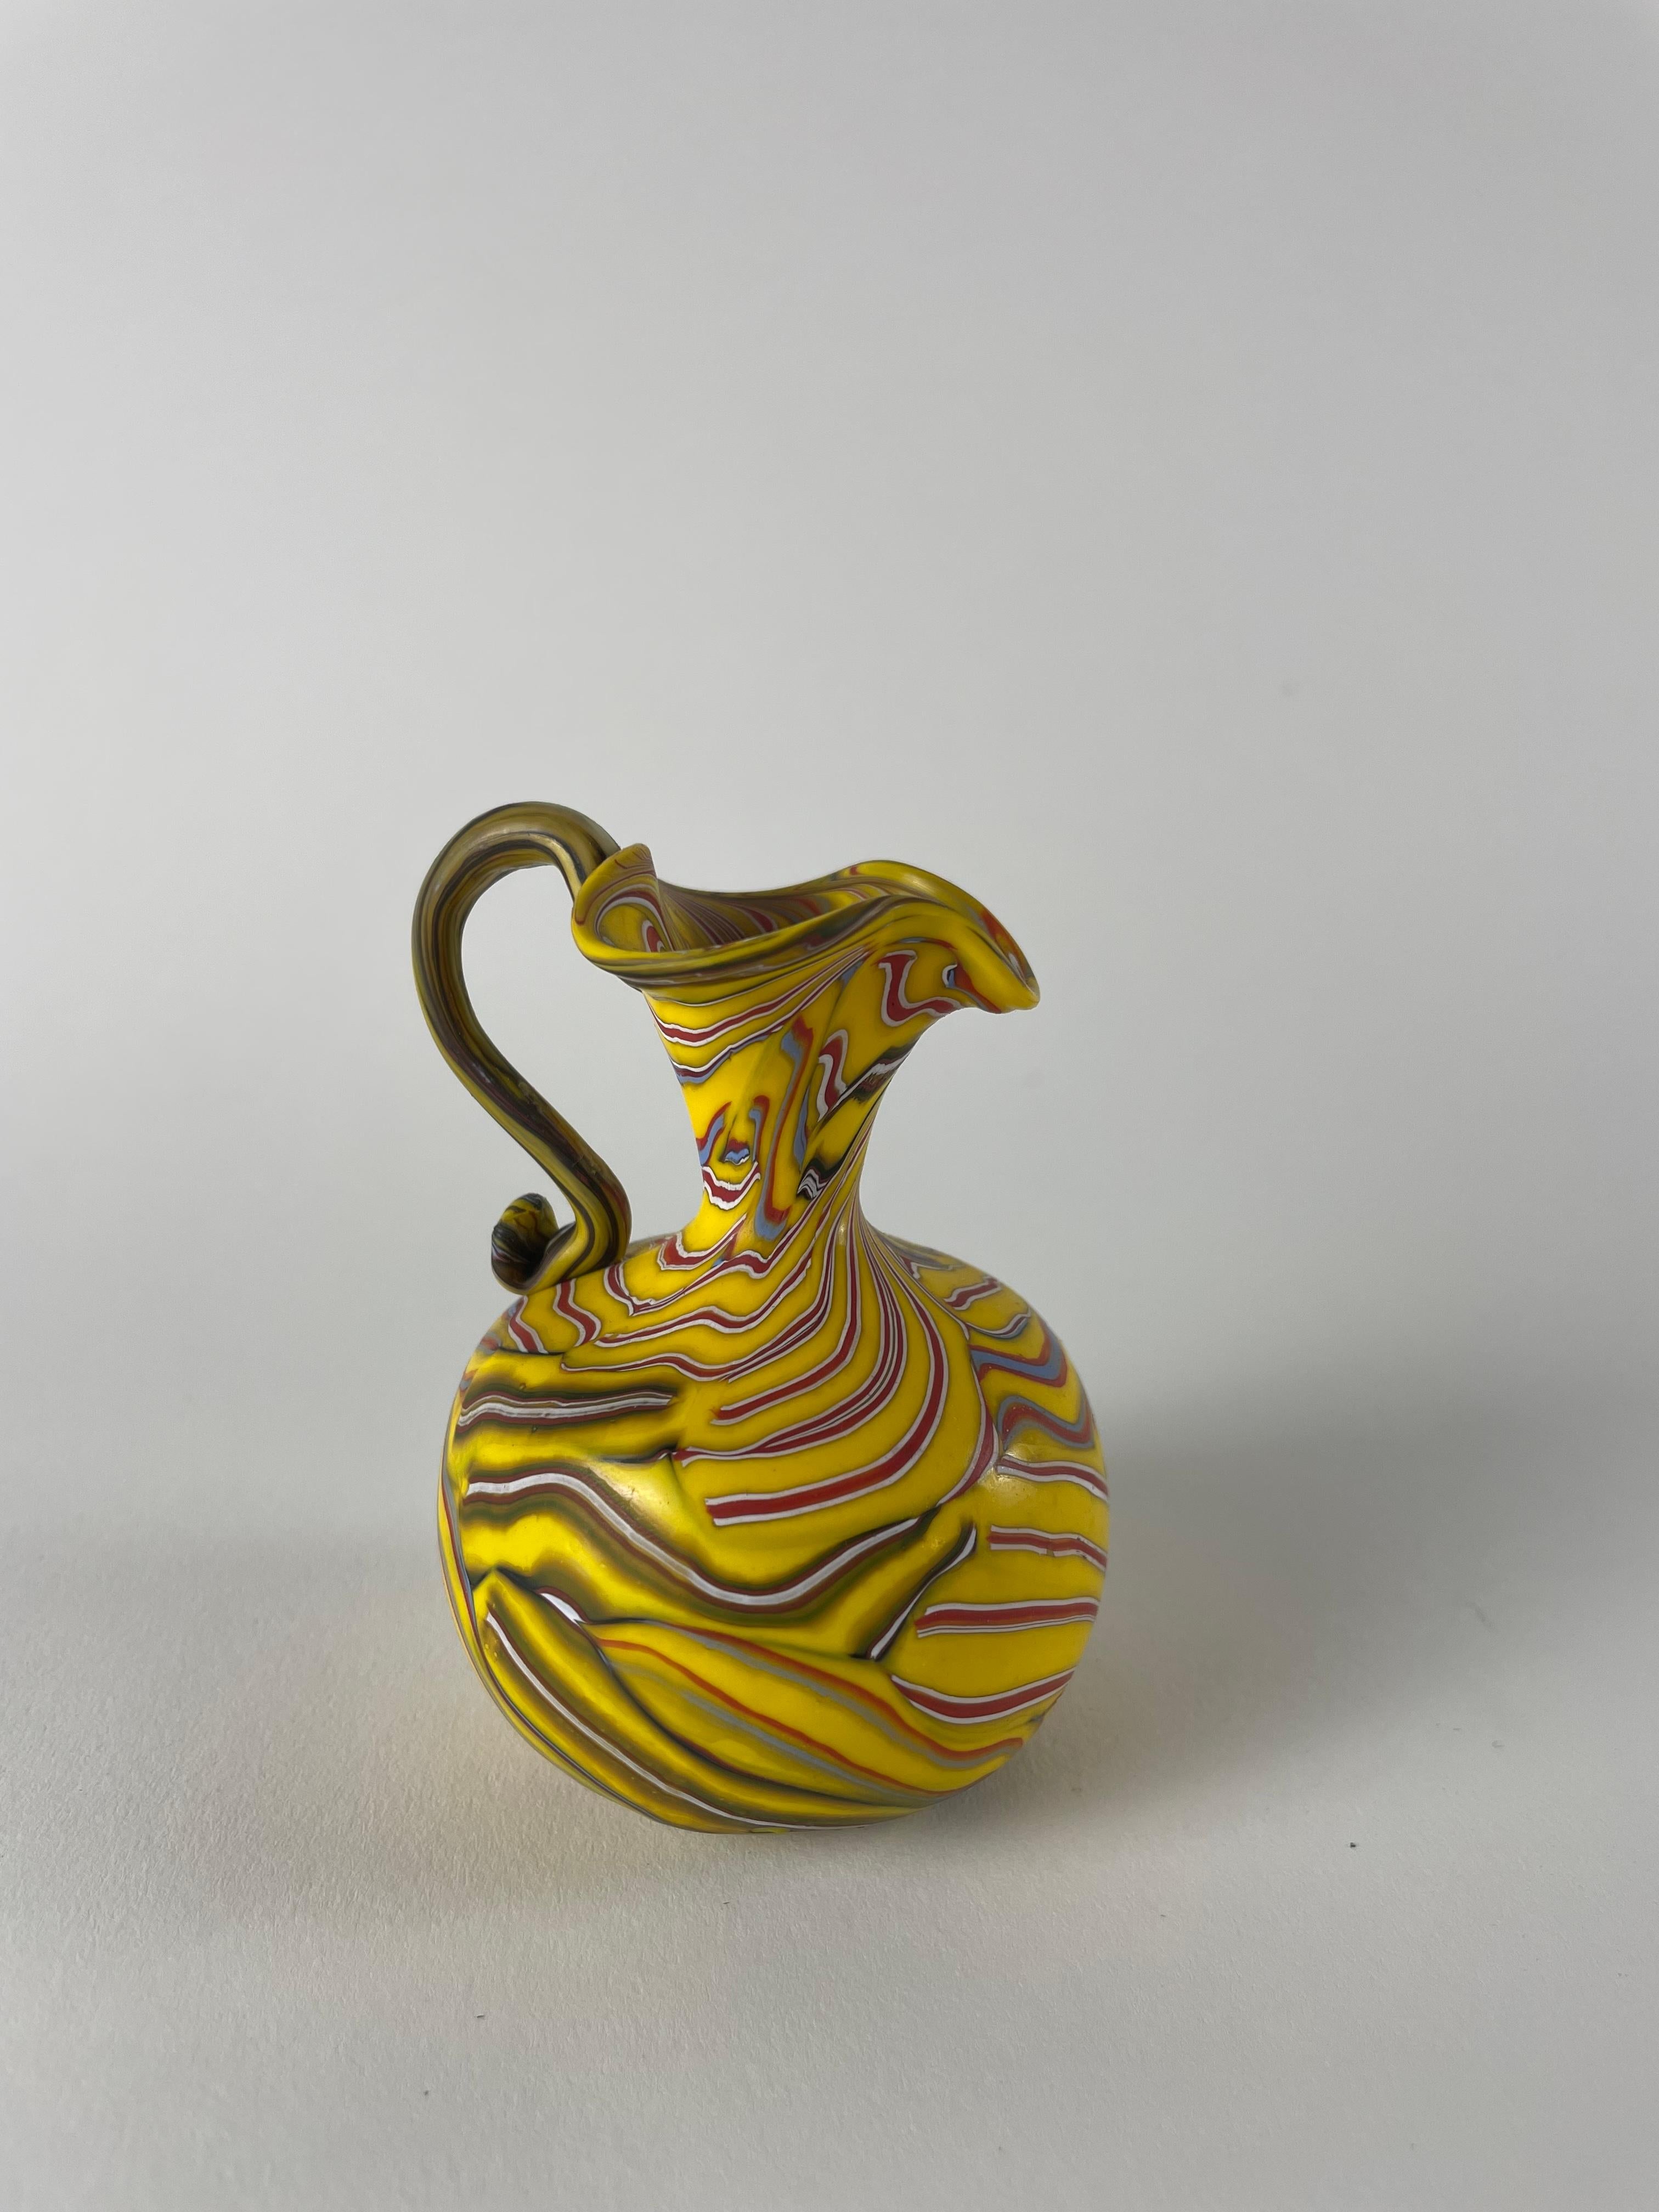 Voici le Vaso a canne, un petit trésor qui incarne l'incroyable savoir-faire de Murano. Ce vase exquis est méticuleusement fabriqué à la main selon une technique unique, avec de petites cannes de verre disposées verticalement et horizontalement